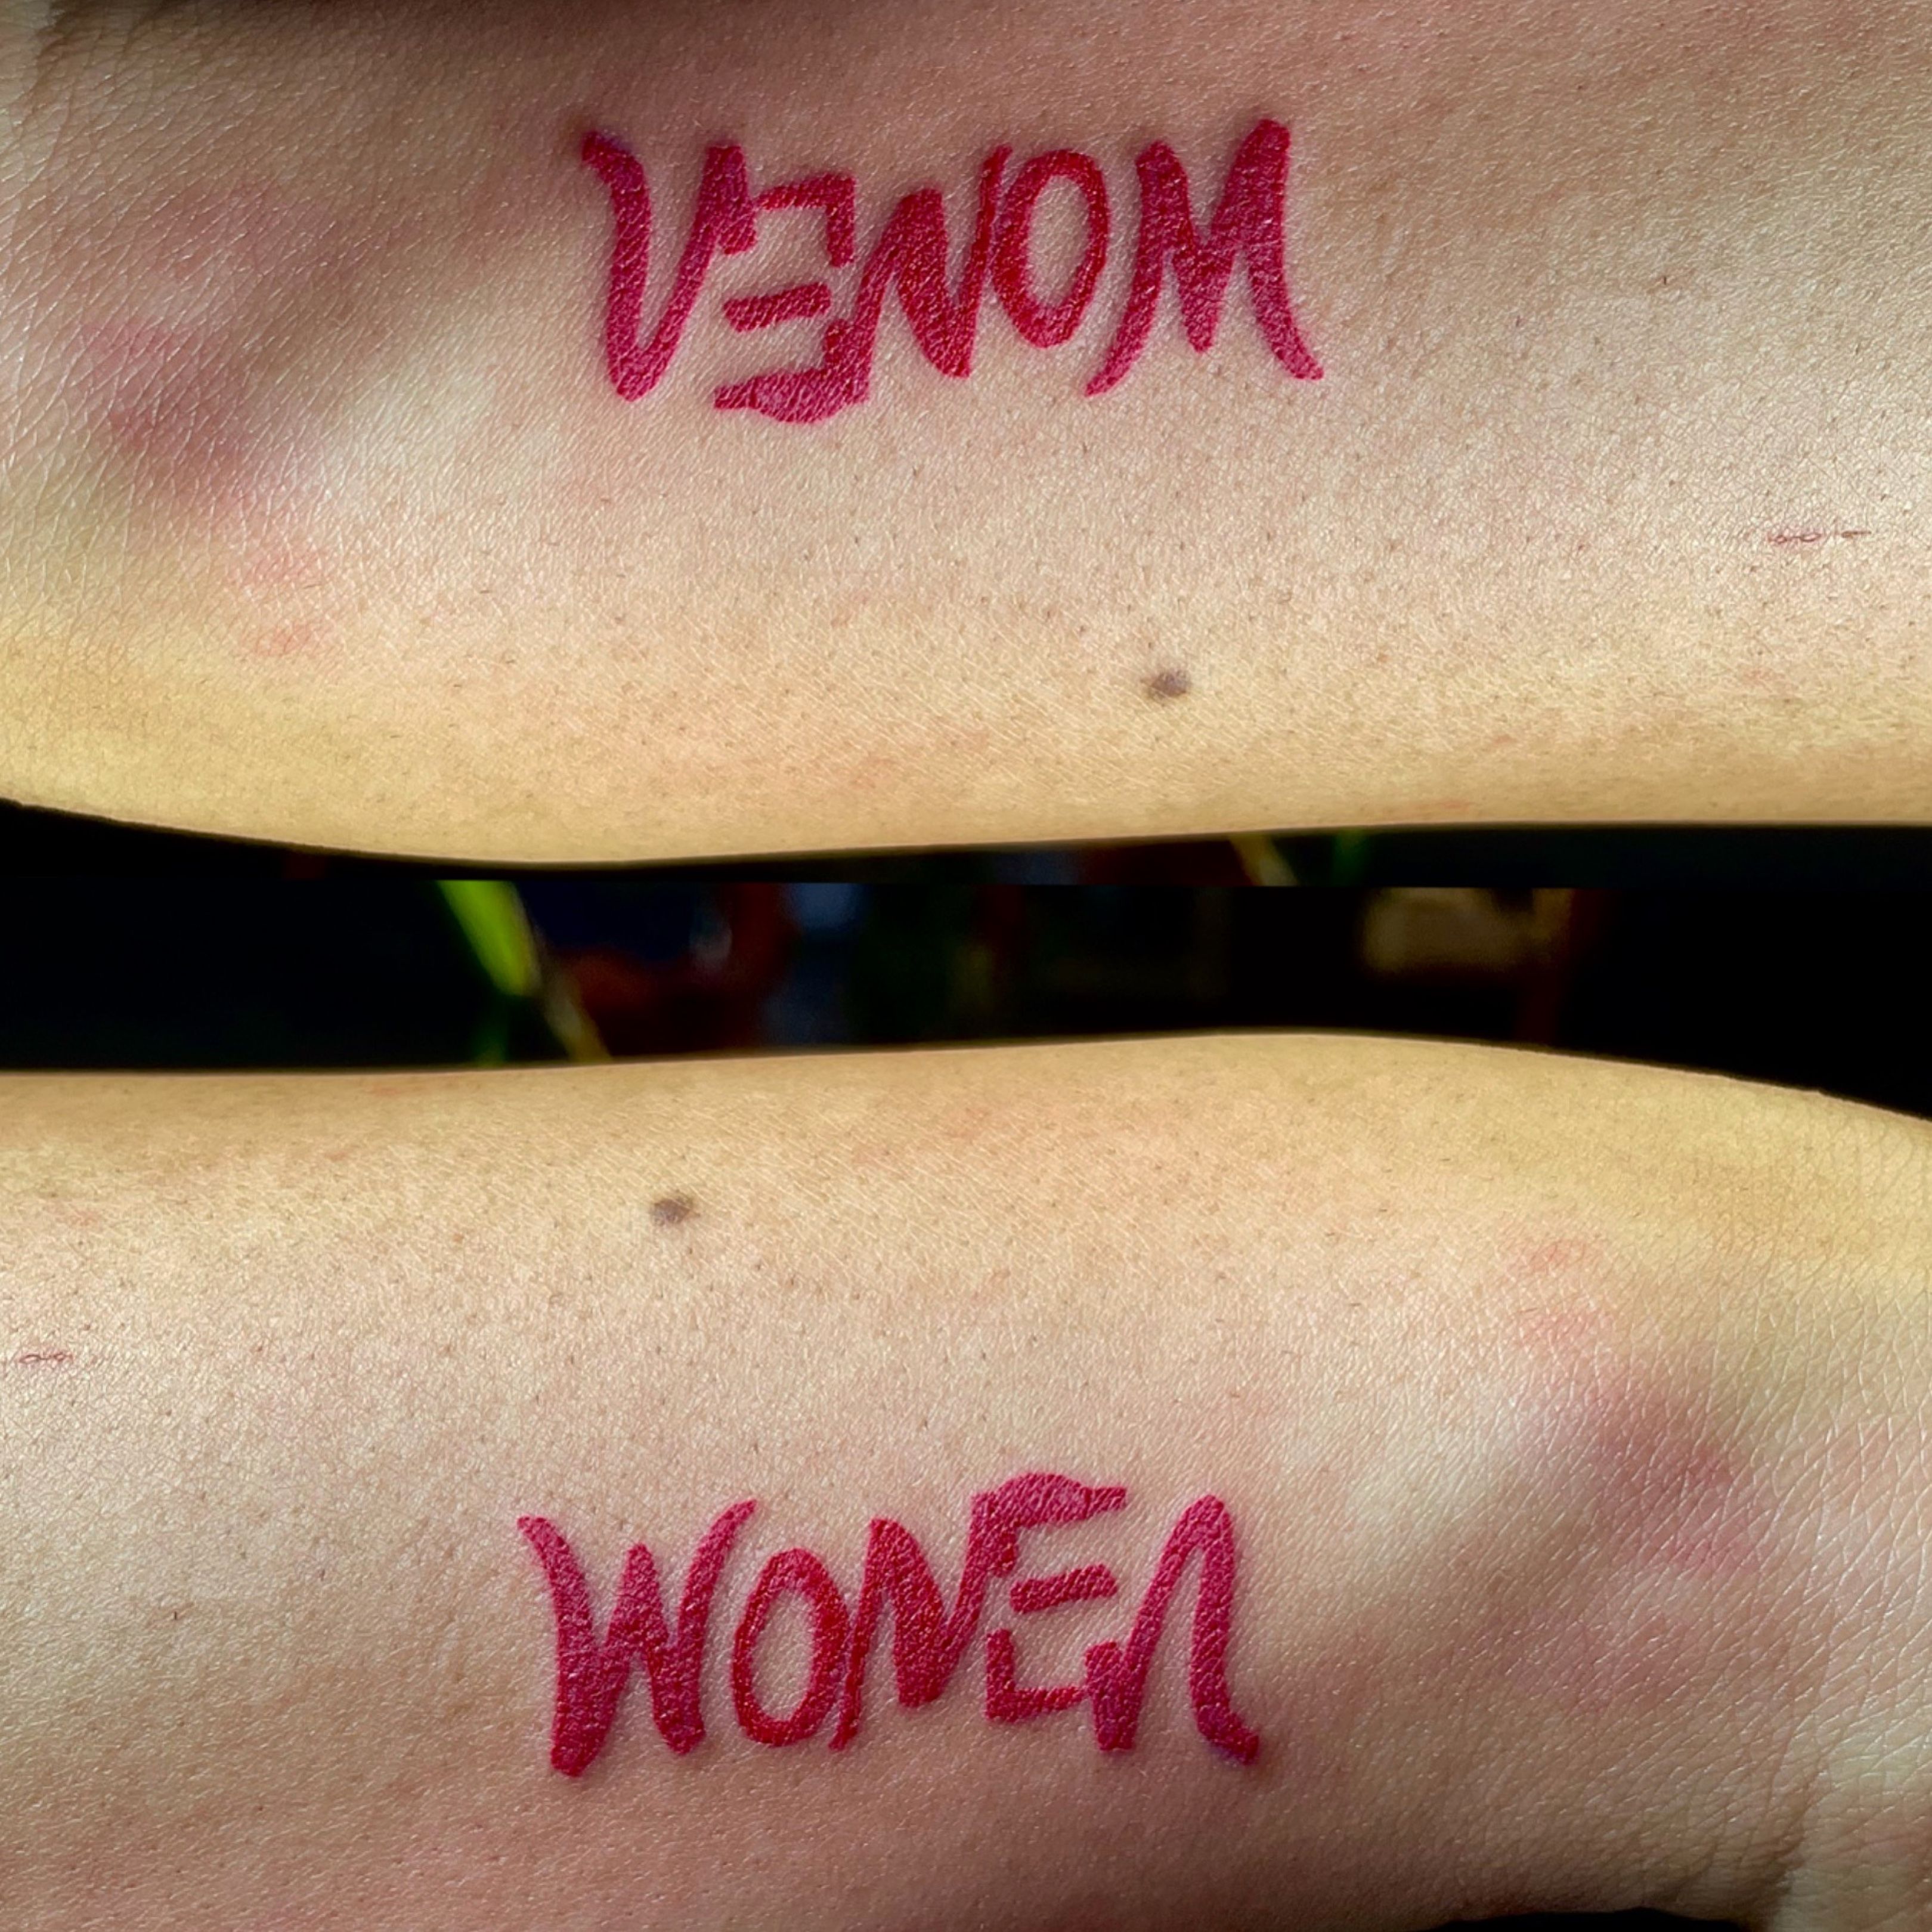 Venom  Women Ambigram  Ambigram tattoo Venom tattoo Badass tattoos